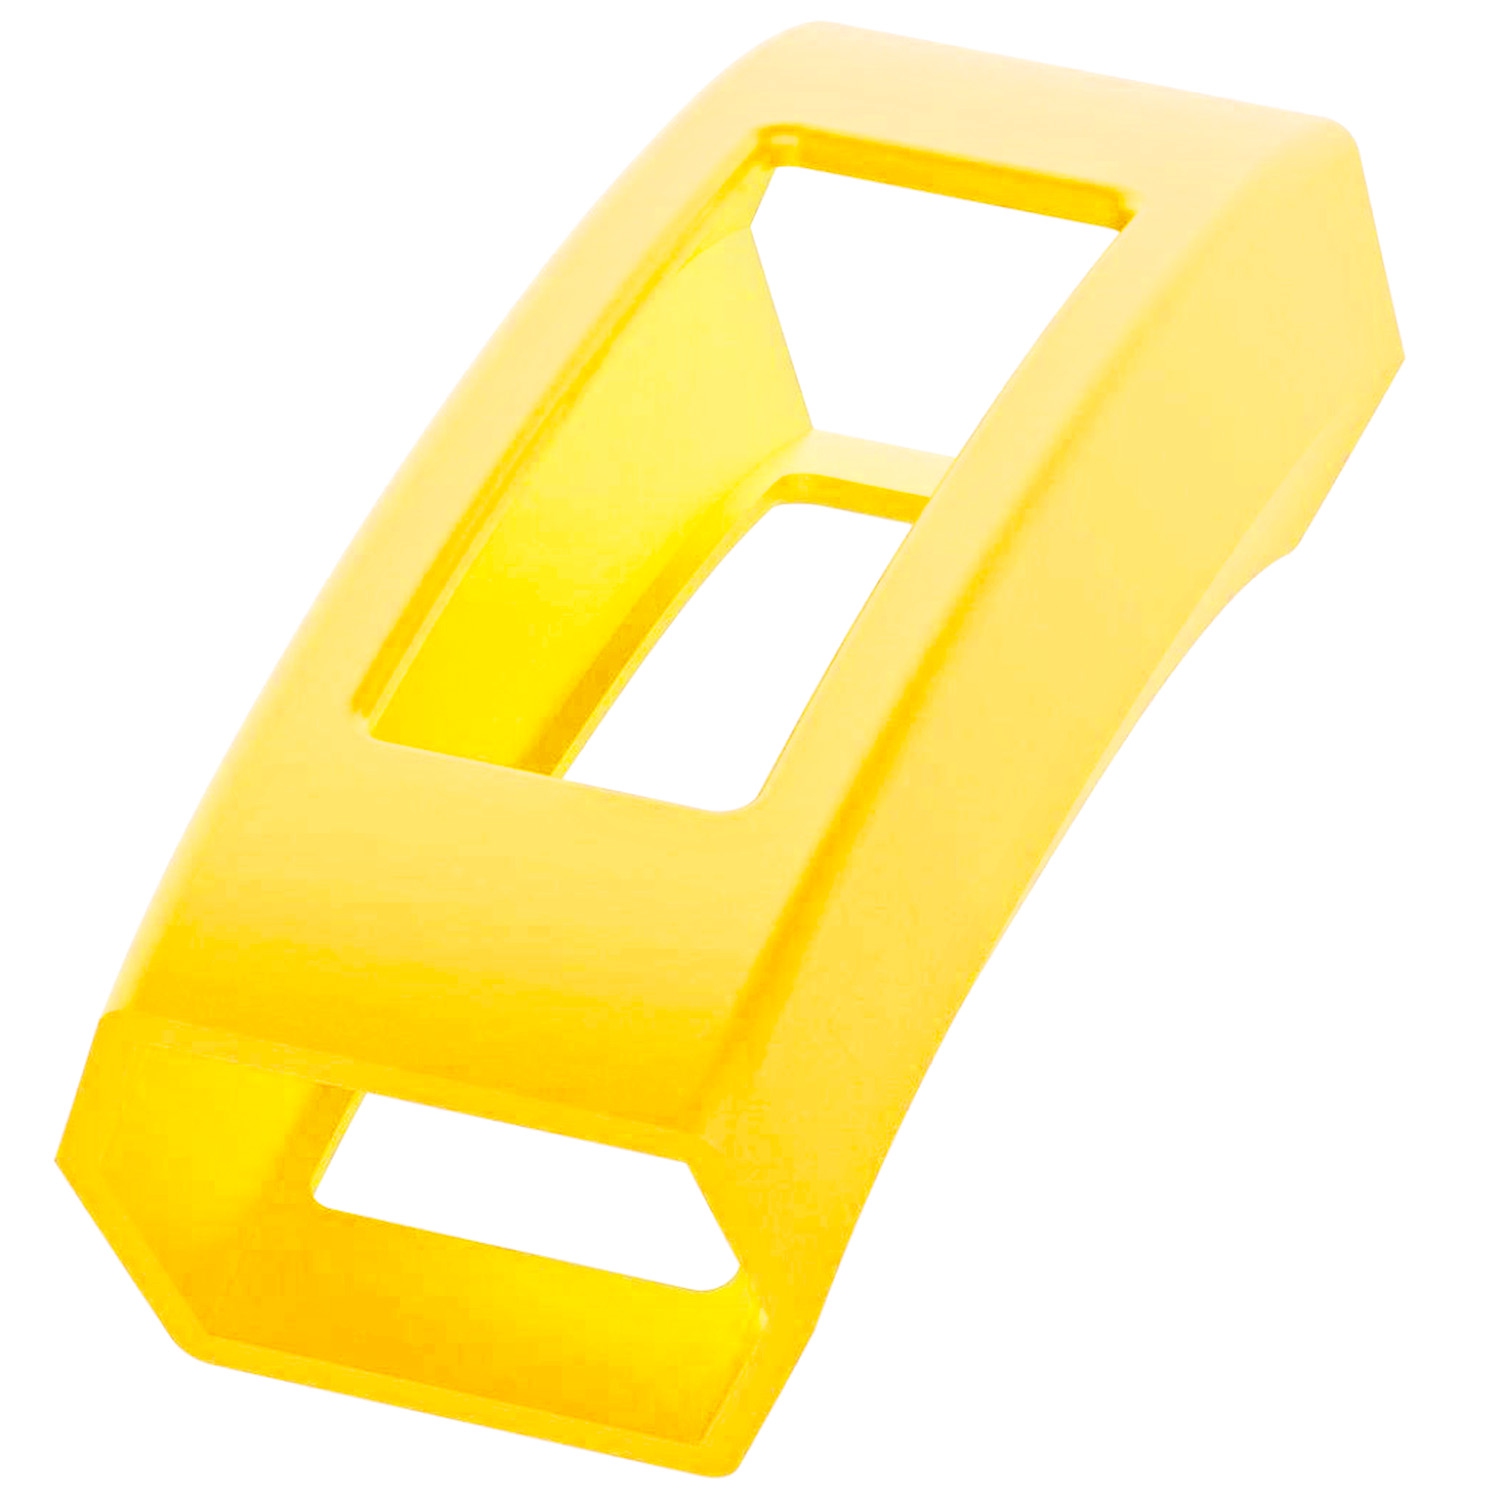 StrapsCo Silicone Rubber Protective Case Cover for Fitbit Alta & Alta HR - Yellow